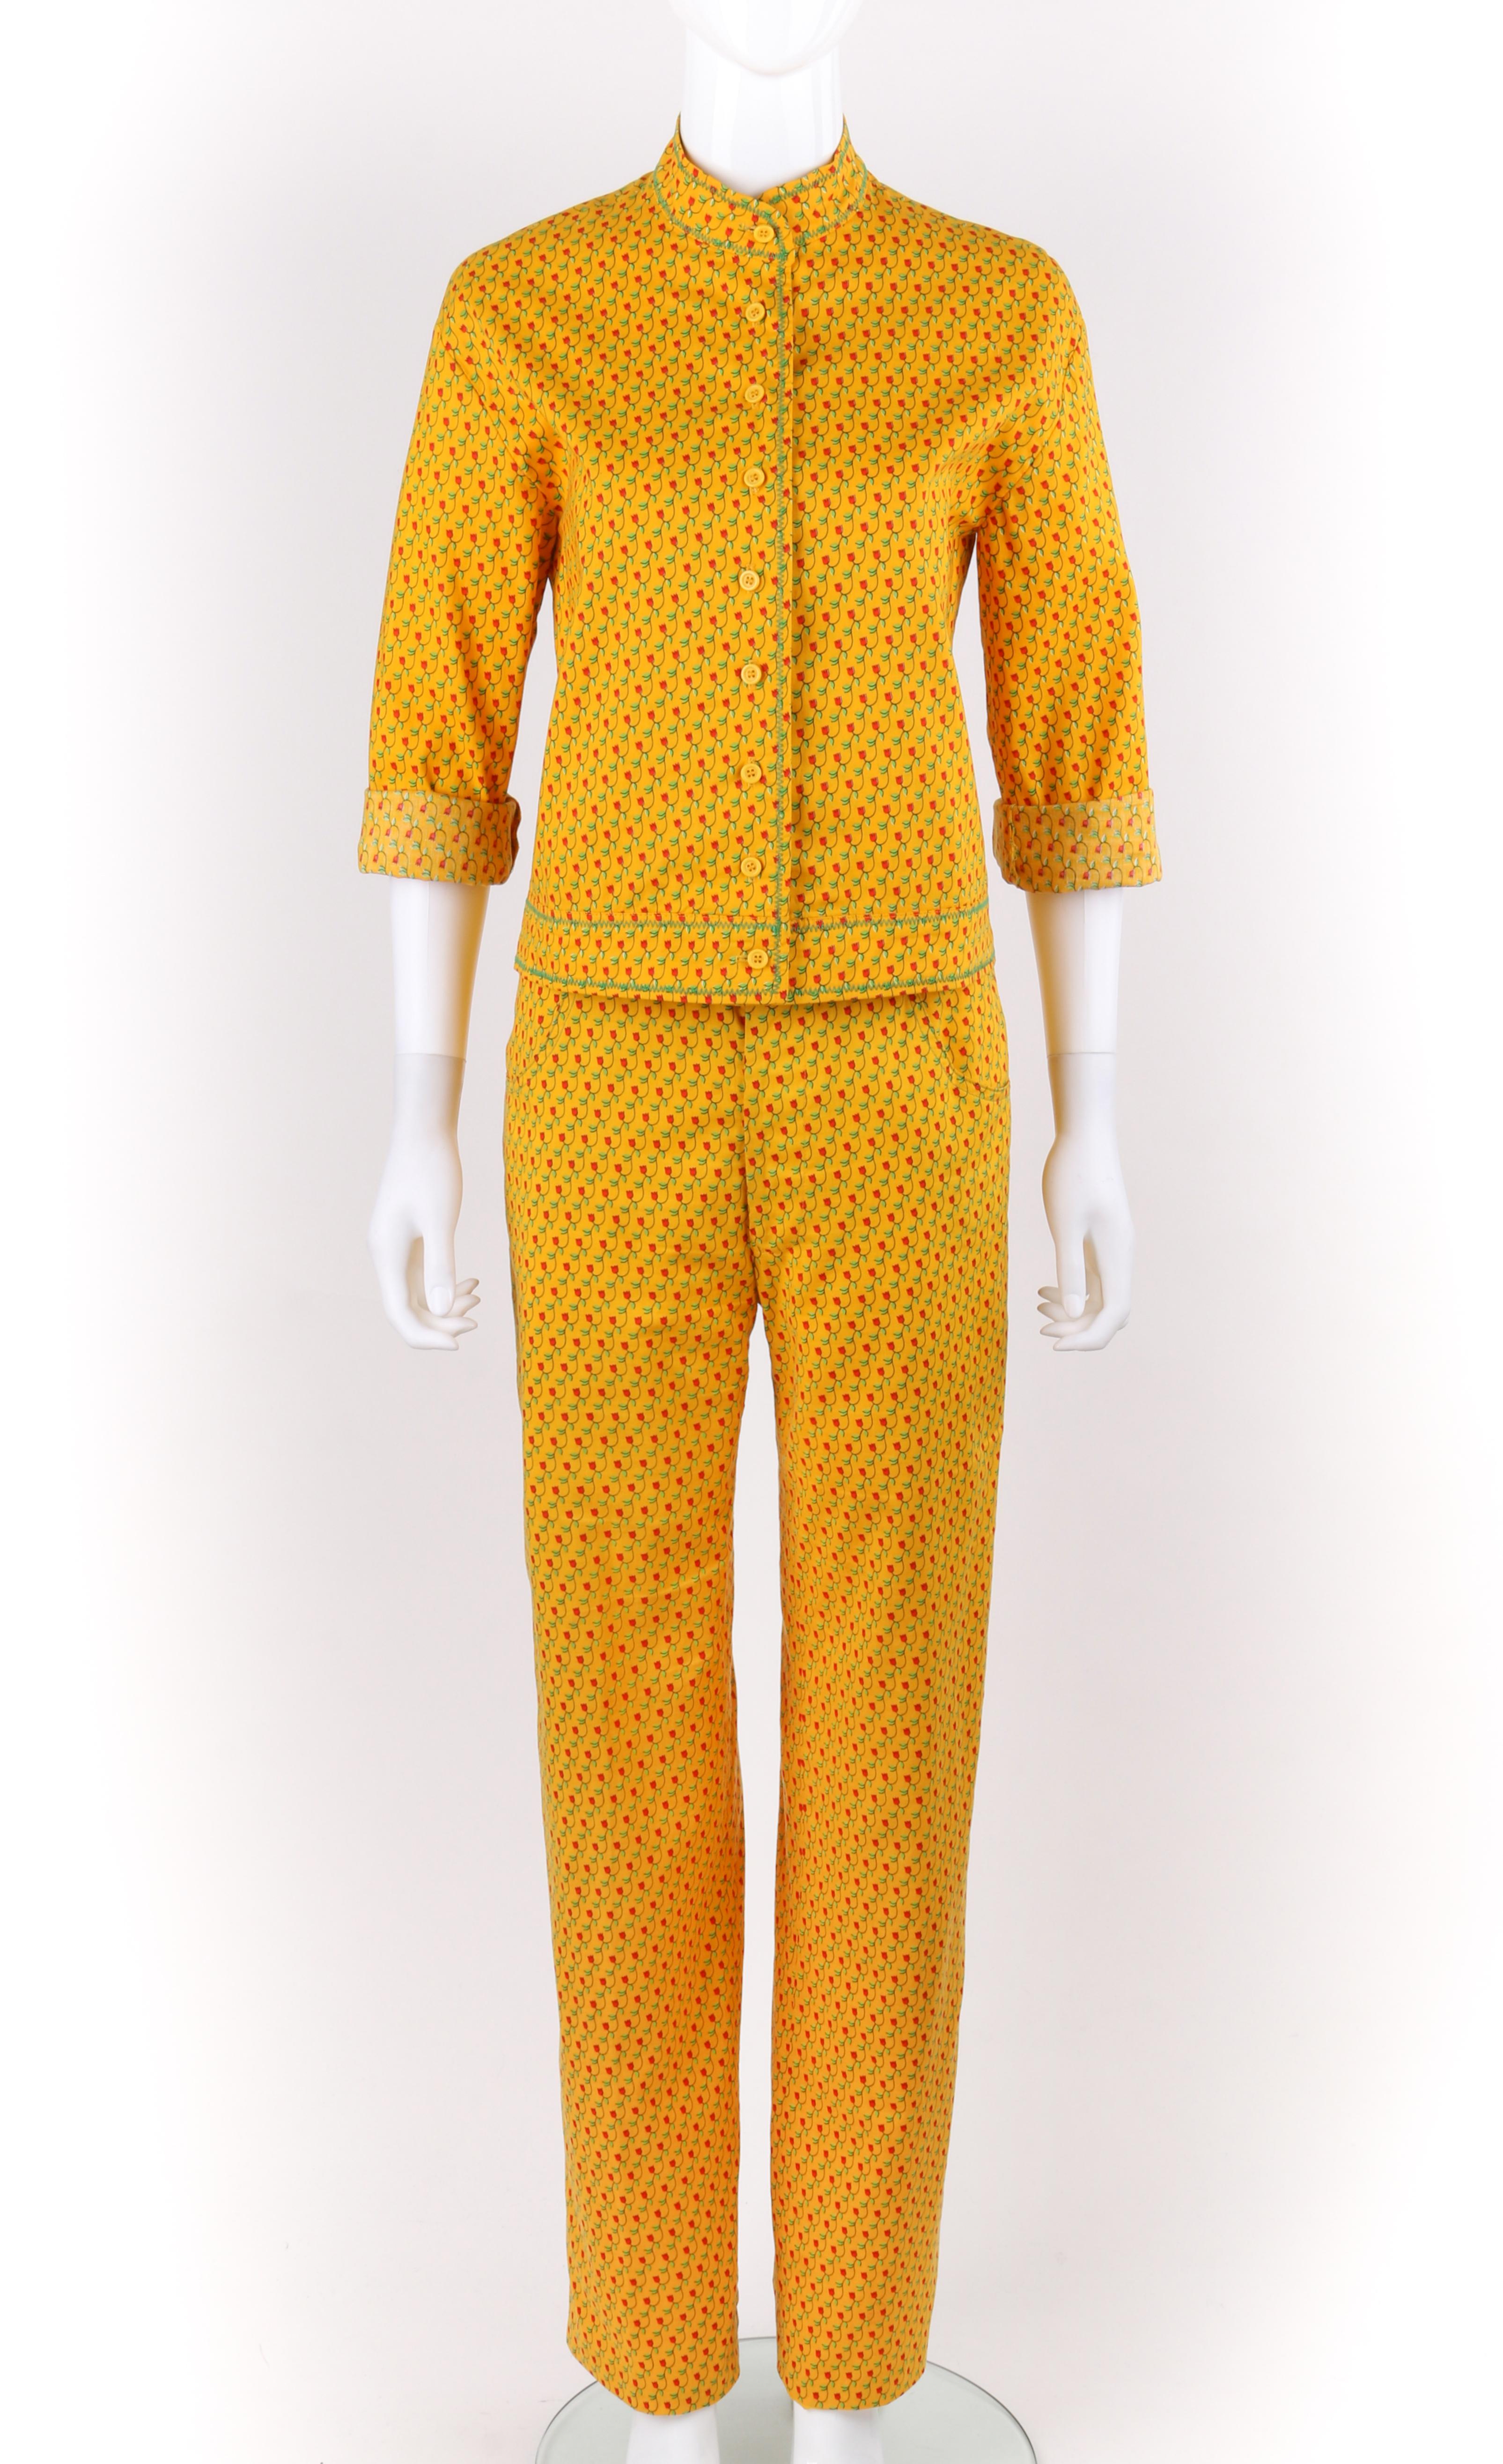 DESCRIPTION: ANNE KLEIN c.1970's 2 Pc Marigold Floral Tulip Button Down Shirt Pants Suit Set
 
Circa: c.1970’s
Label(s): Anne Klein; Union Label 
Designer: Donna Karan
Style: Pant suit
Color(s): Marigold yellow, green, black, and red
Lined: